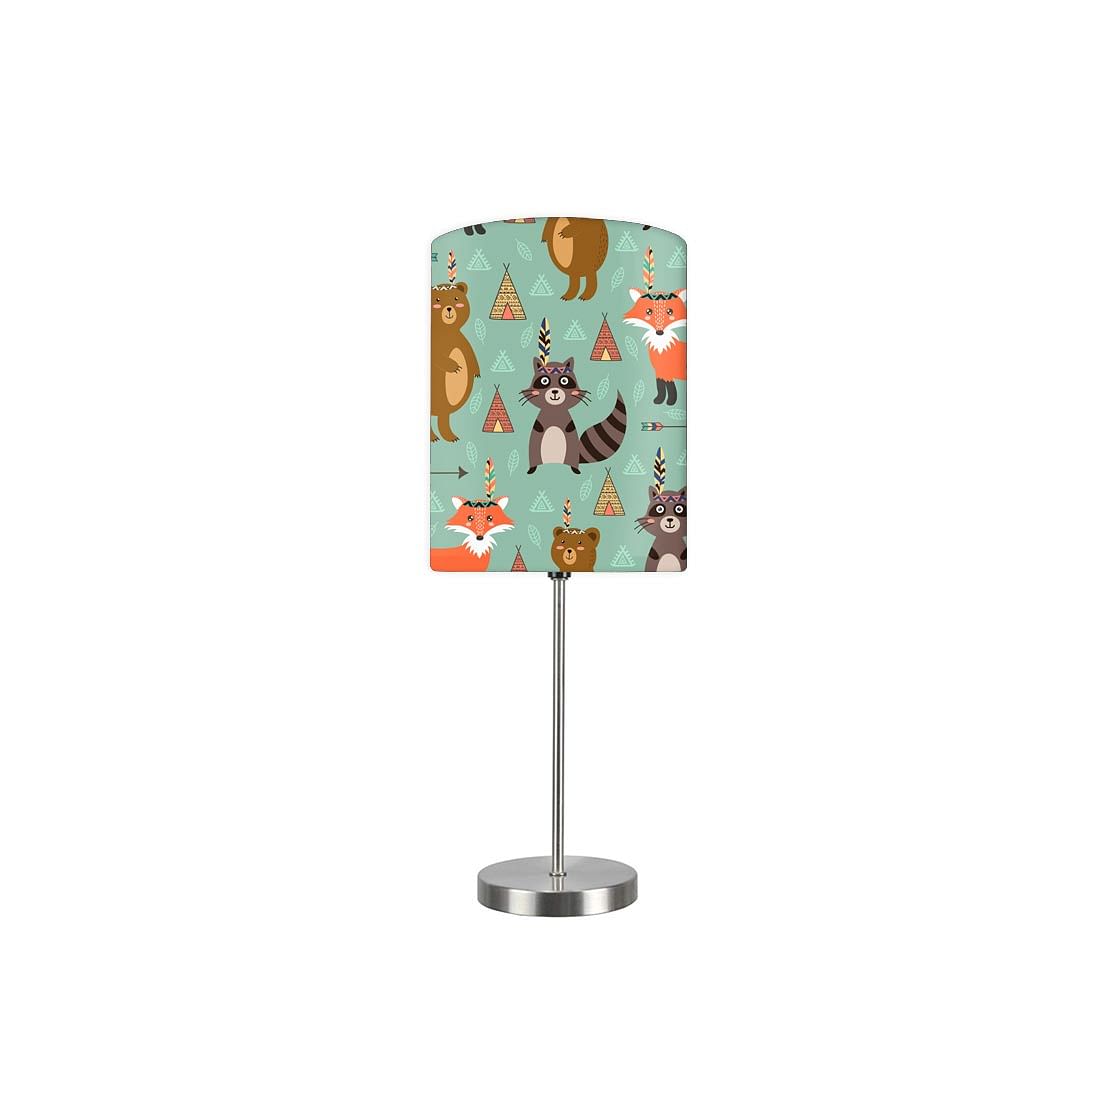 Cute Printed Kids Lamps for Bedroom - Bear Camp 0066 Nutcase